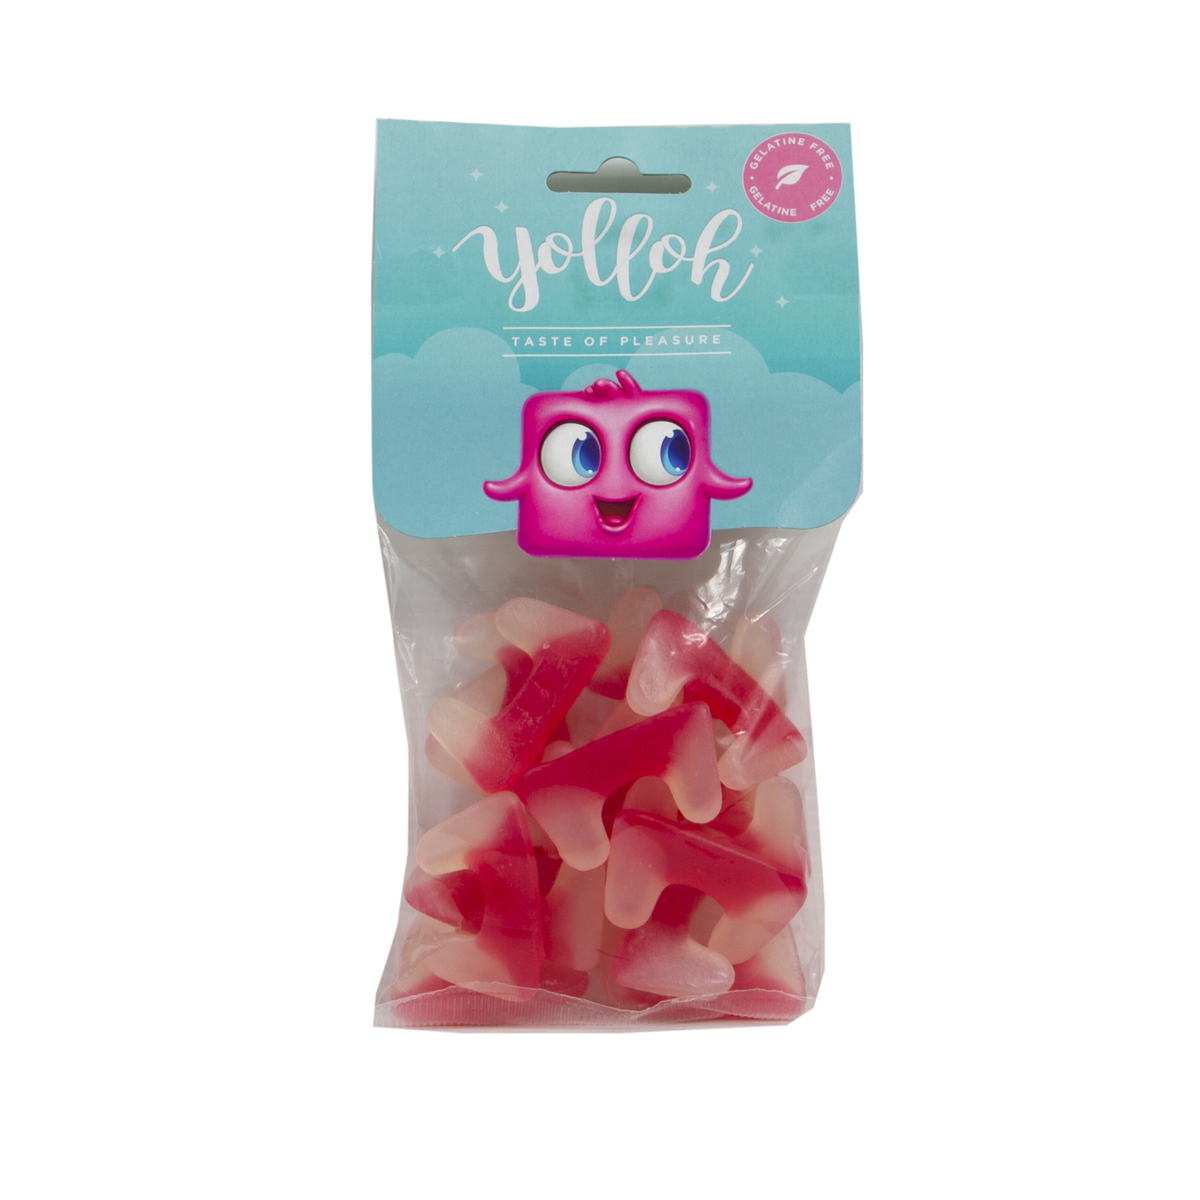 Yolloh Taste Of Pleasure Vampire Teeth 120g Candy Bags Lulu Qatar 1495